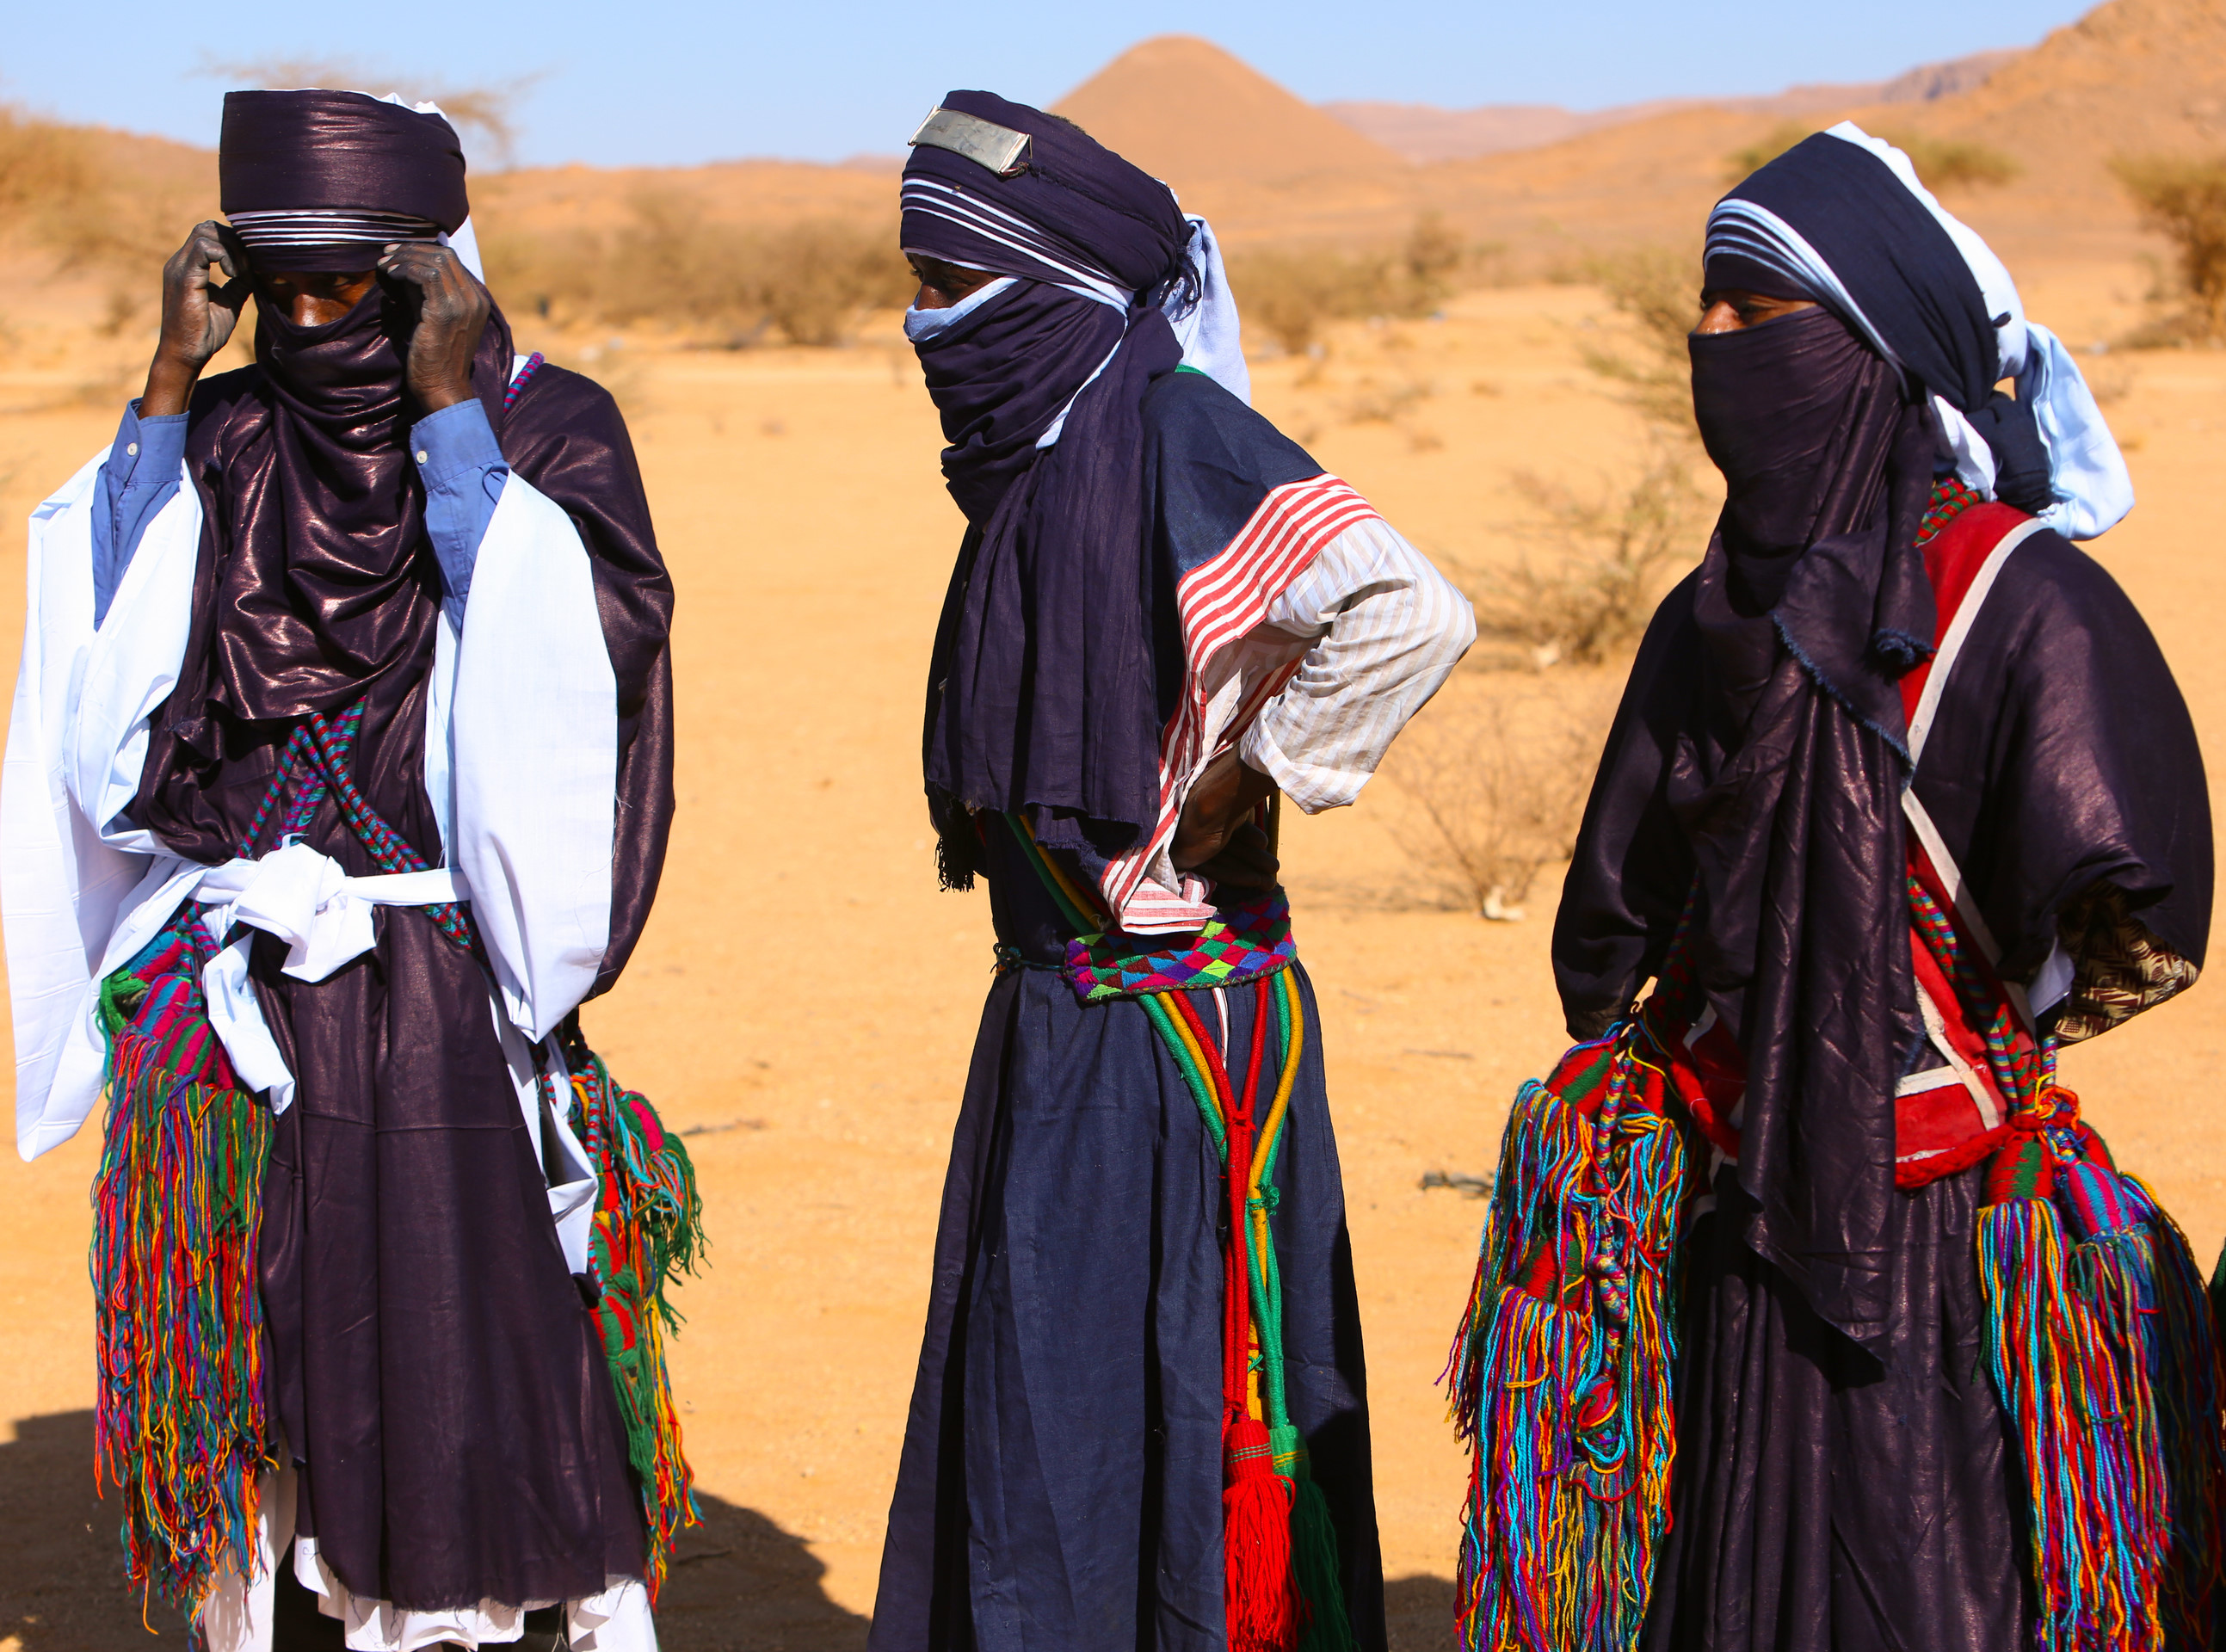 Bir Berberi kabilesi olan Tuaregler; mavi, uzun, bütün bedeni saracak şekilde tasarlanmış kendilerine özgü etnik giysiler giyiyor ve yüzlerini örtüyle kapatıyor.